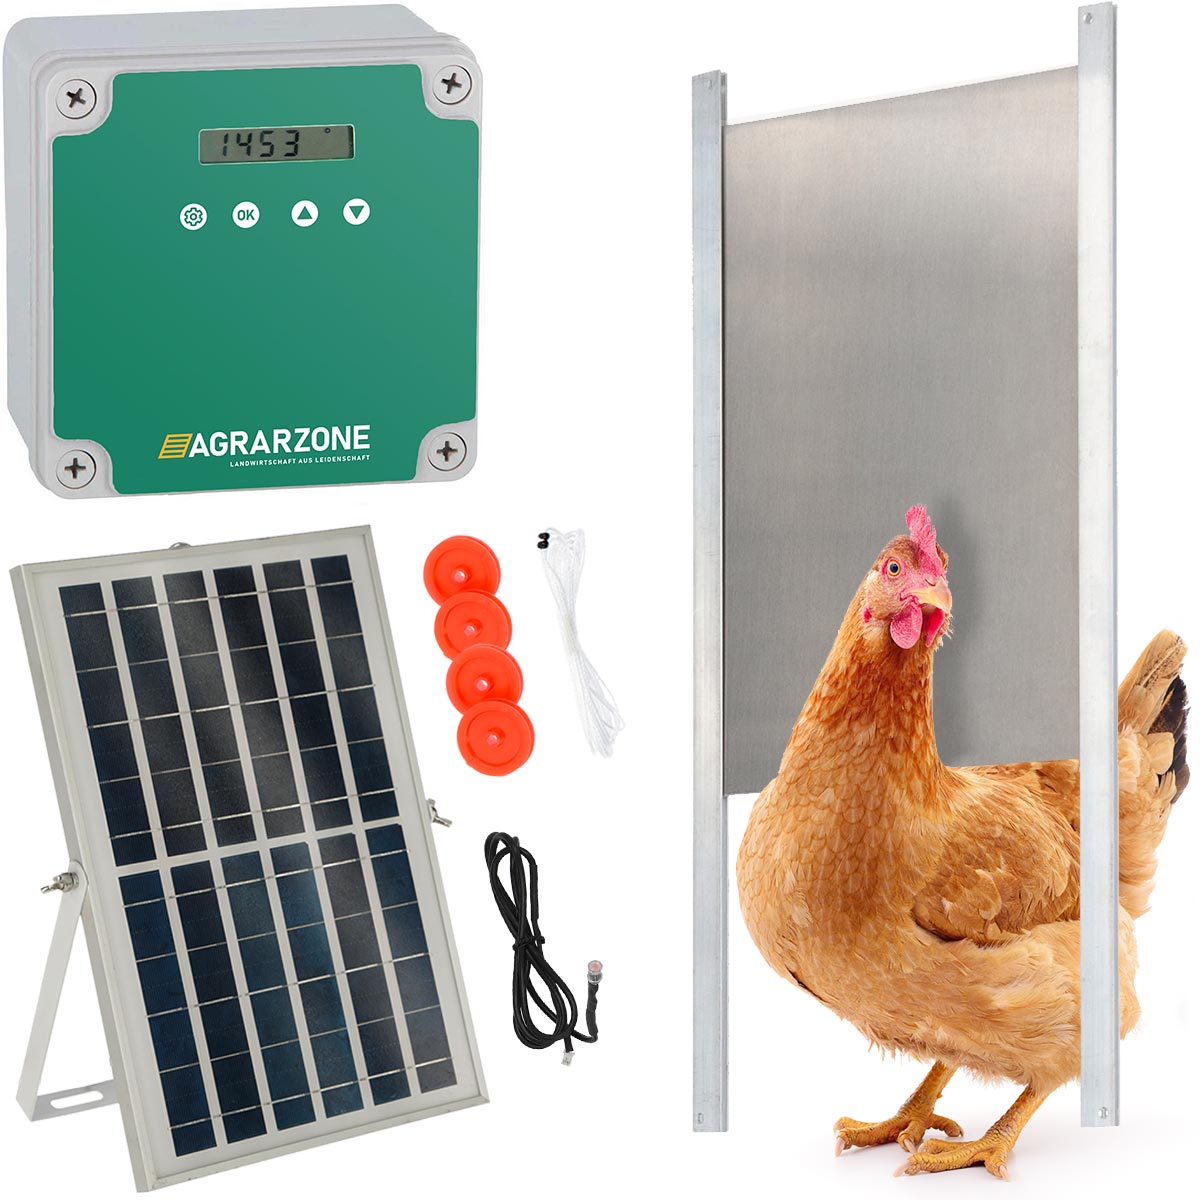 Agrarzone ușă automată pentru coteț cu energie solară fără cursor